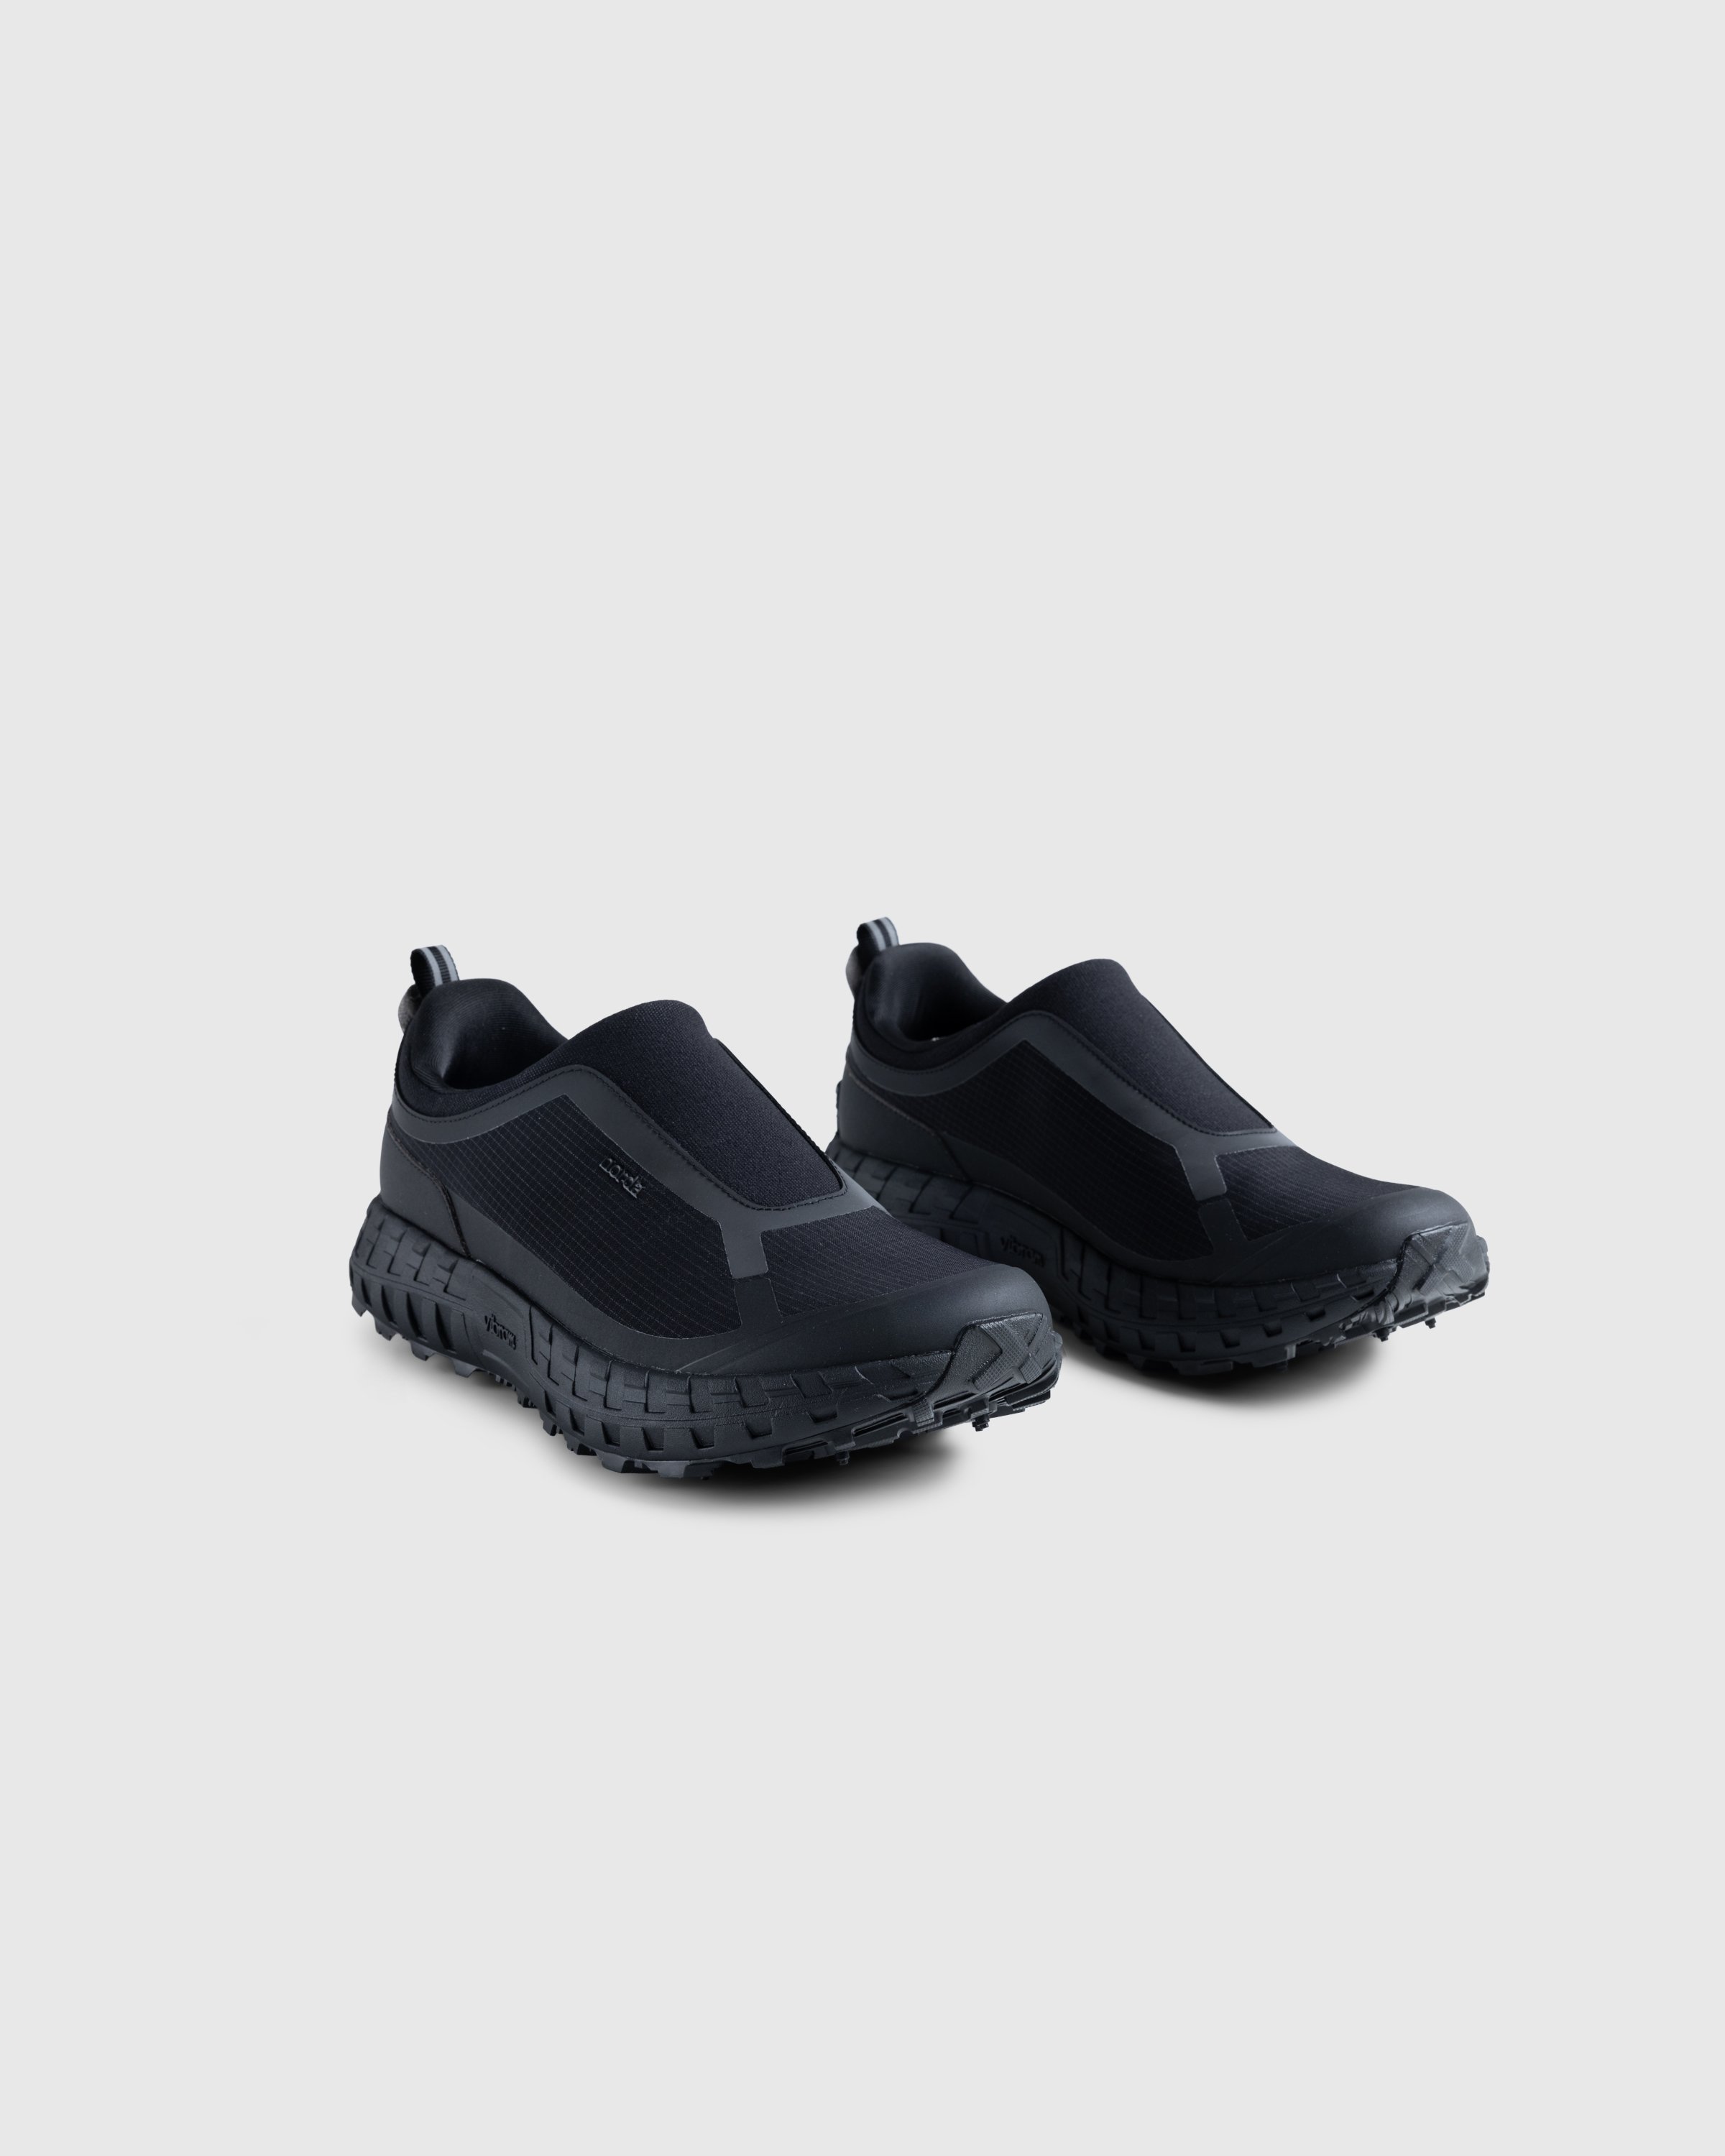 Norda - NORDA003-M - Footwear - Black - Image 3